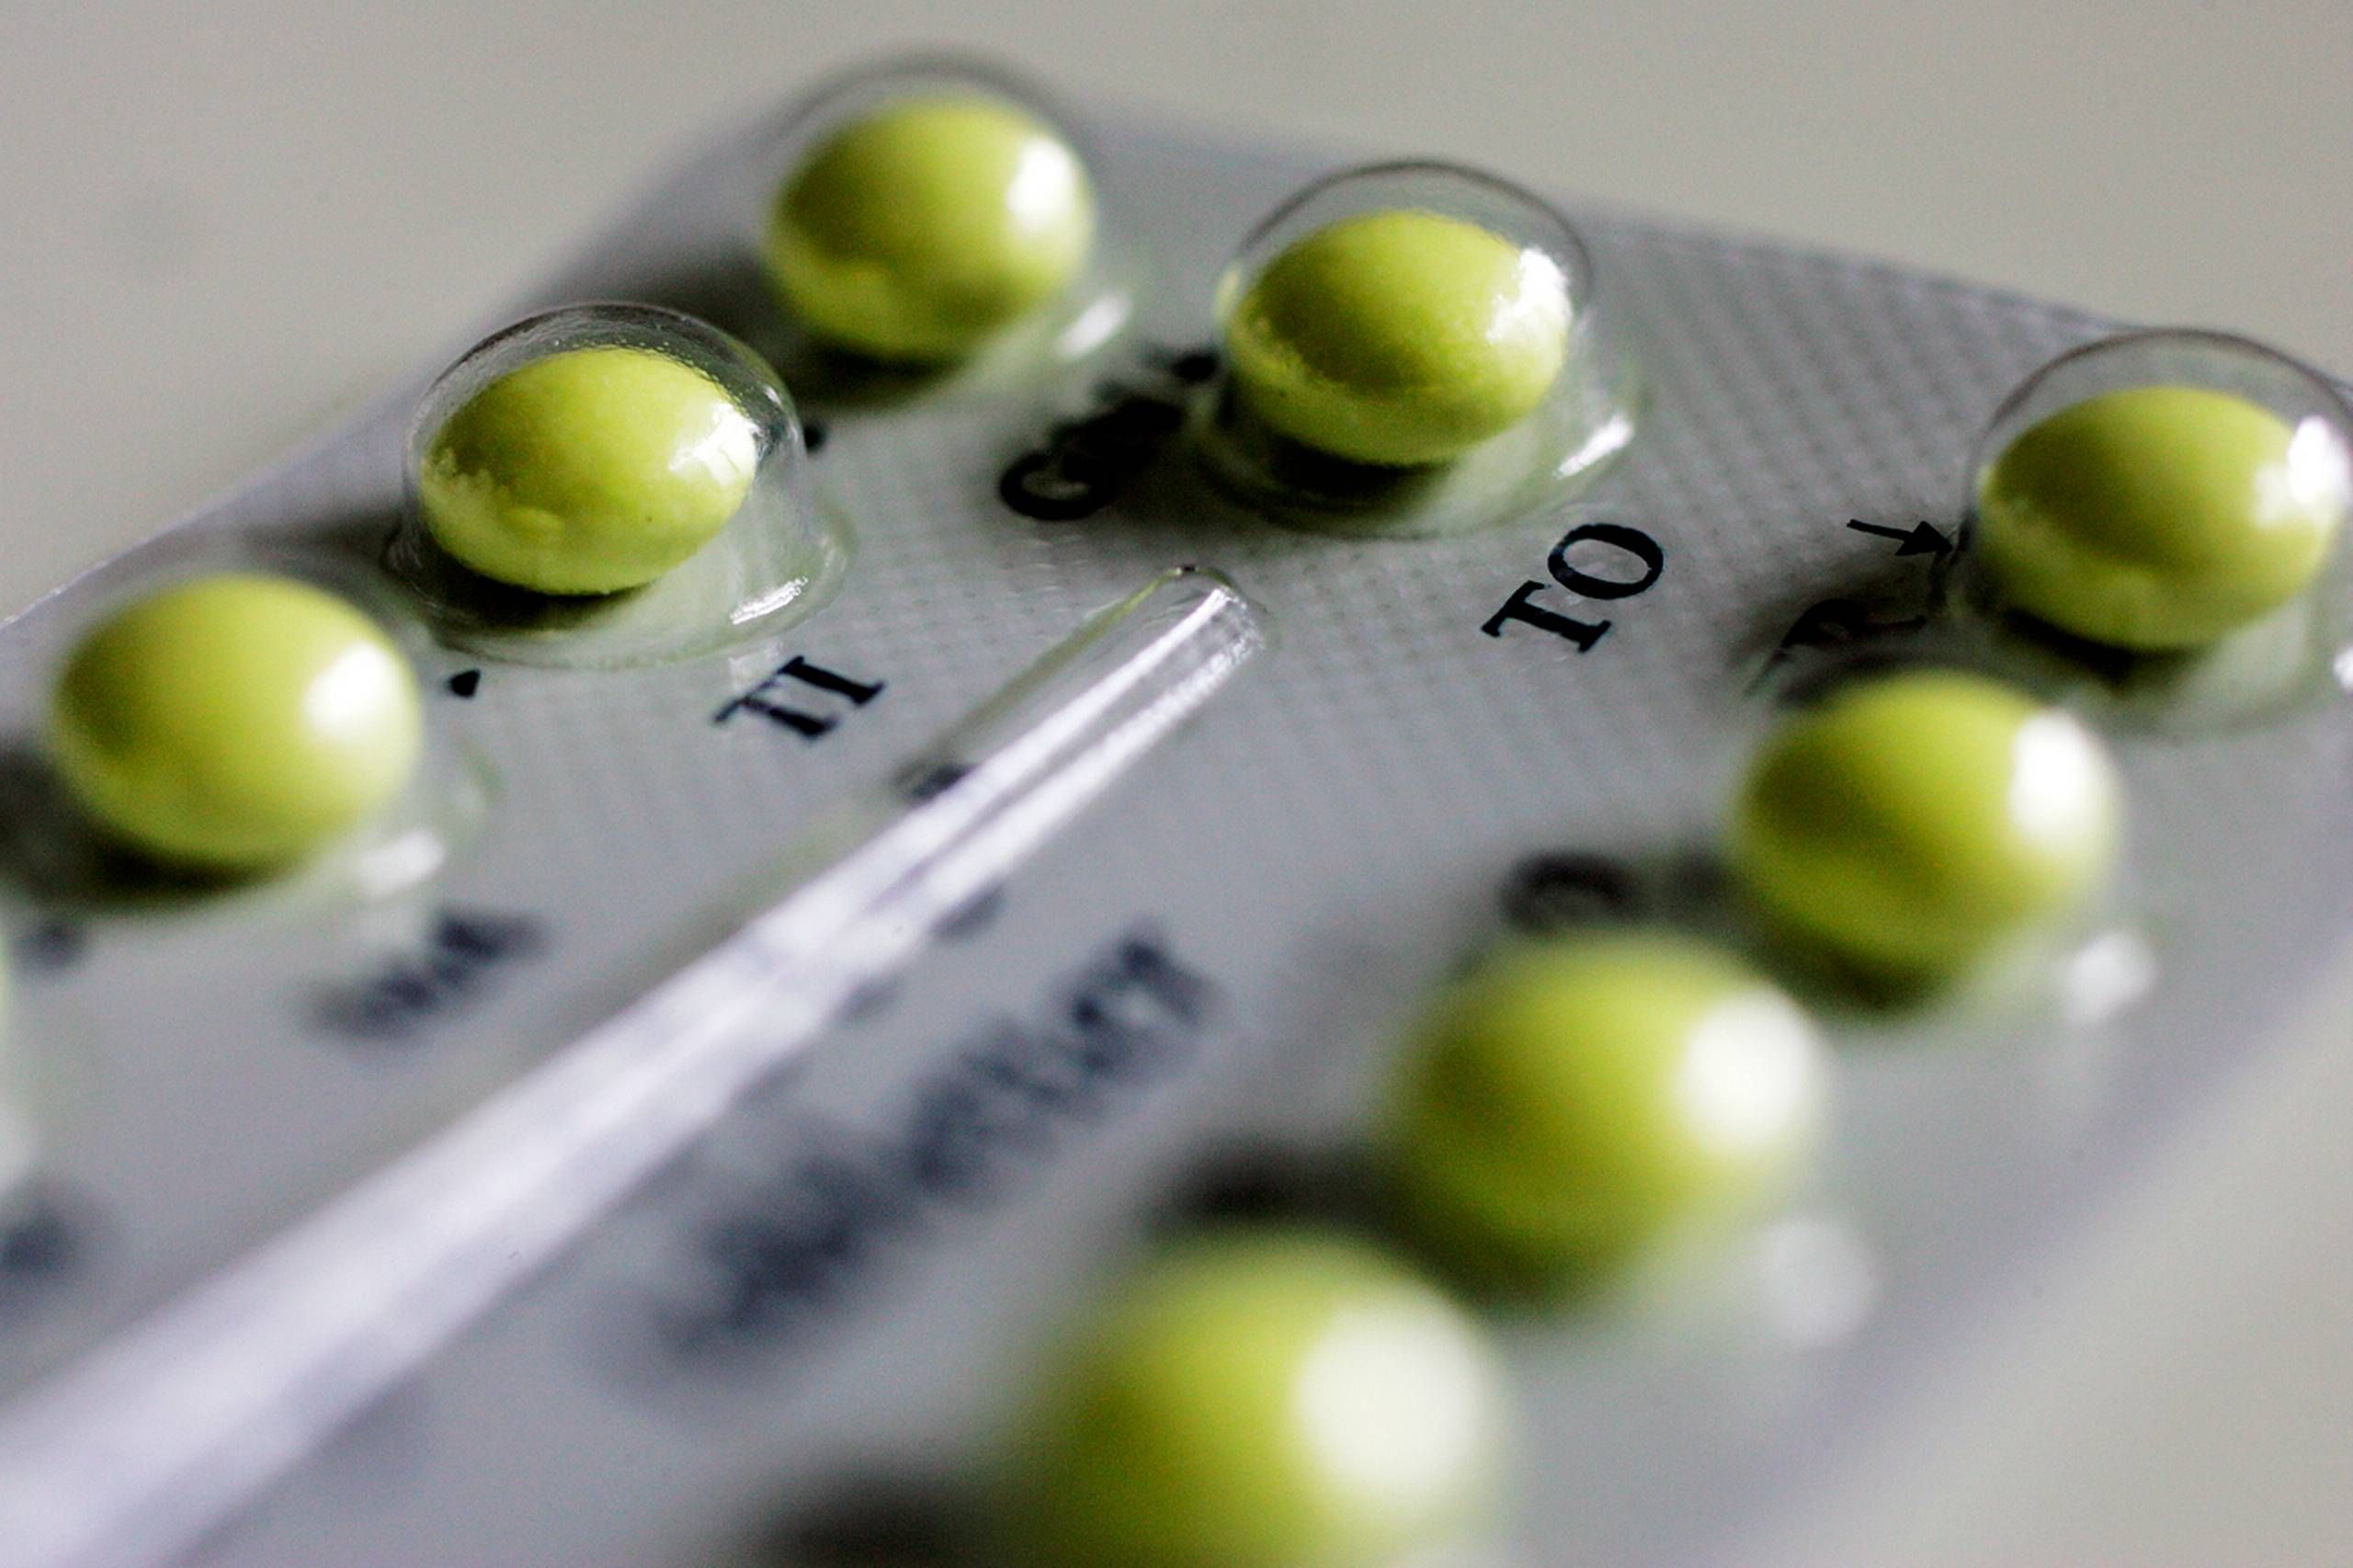 bjærgning nå Hemmelighed P-piller beskytter mod mere end graviditet